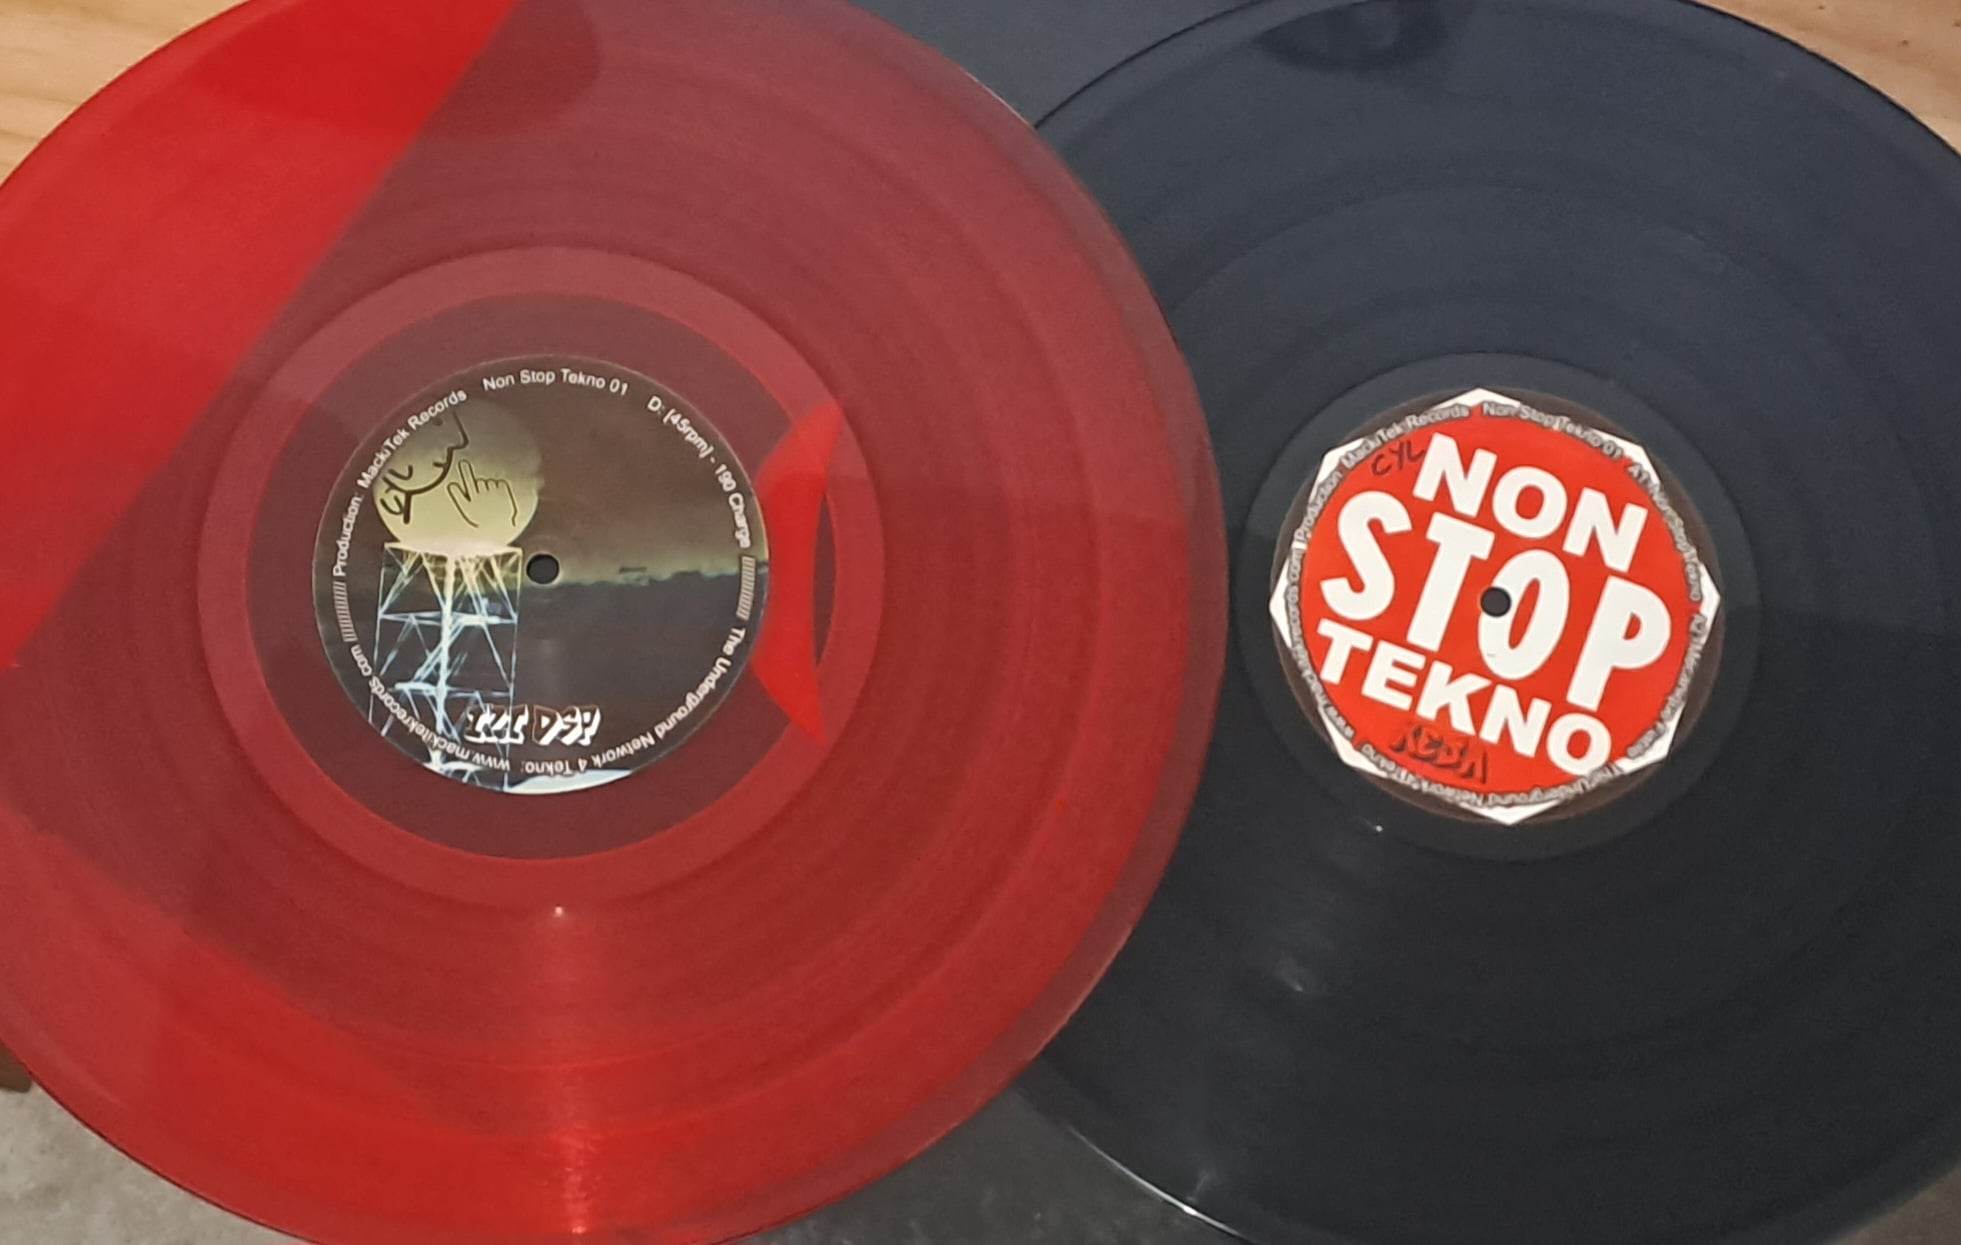 Non Stop Tekno 01 (double album) - vinyle freetekno